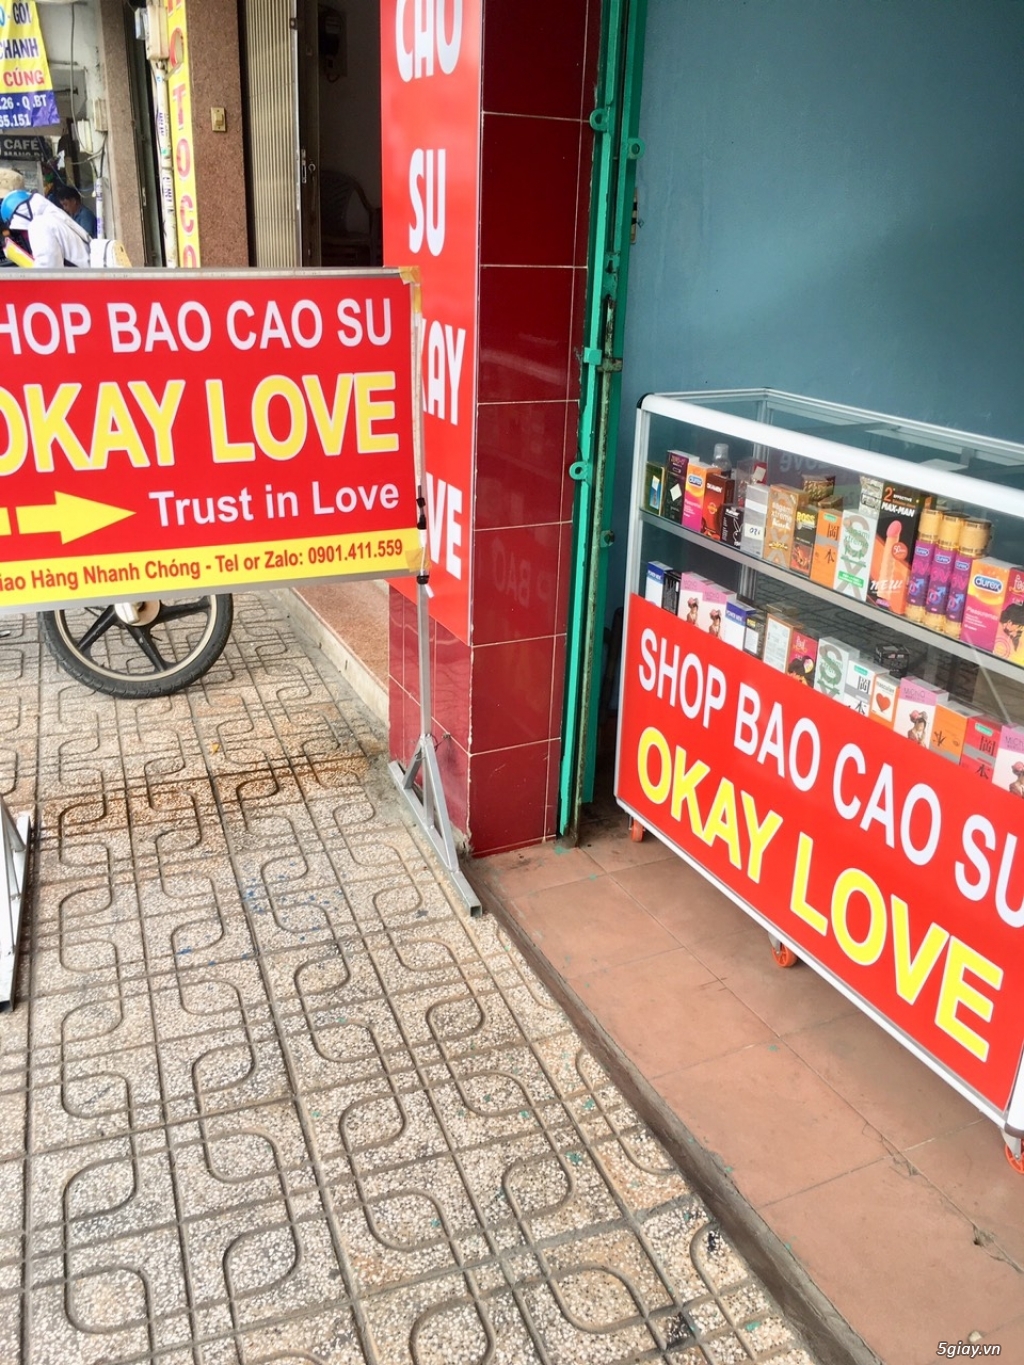 Shop Bao Cao Su Okay Love - Q. Bình Thạnh, Hcm